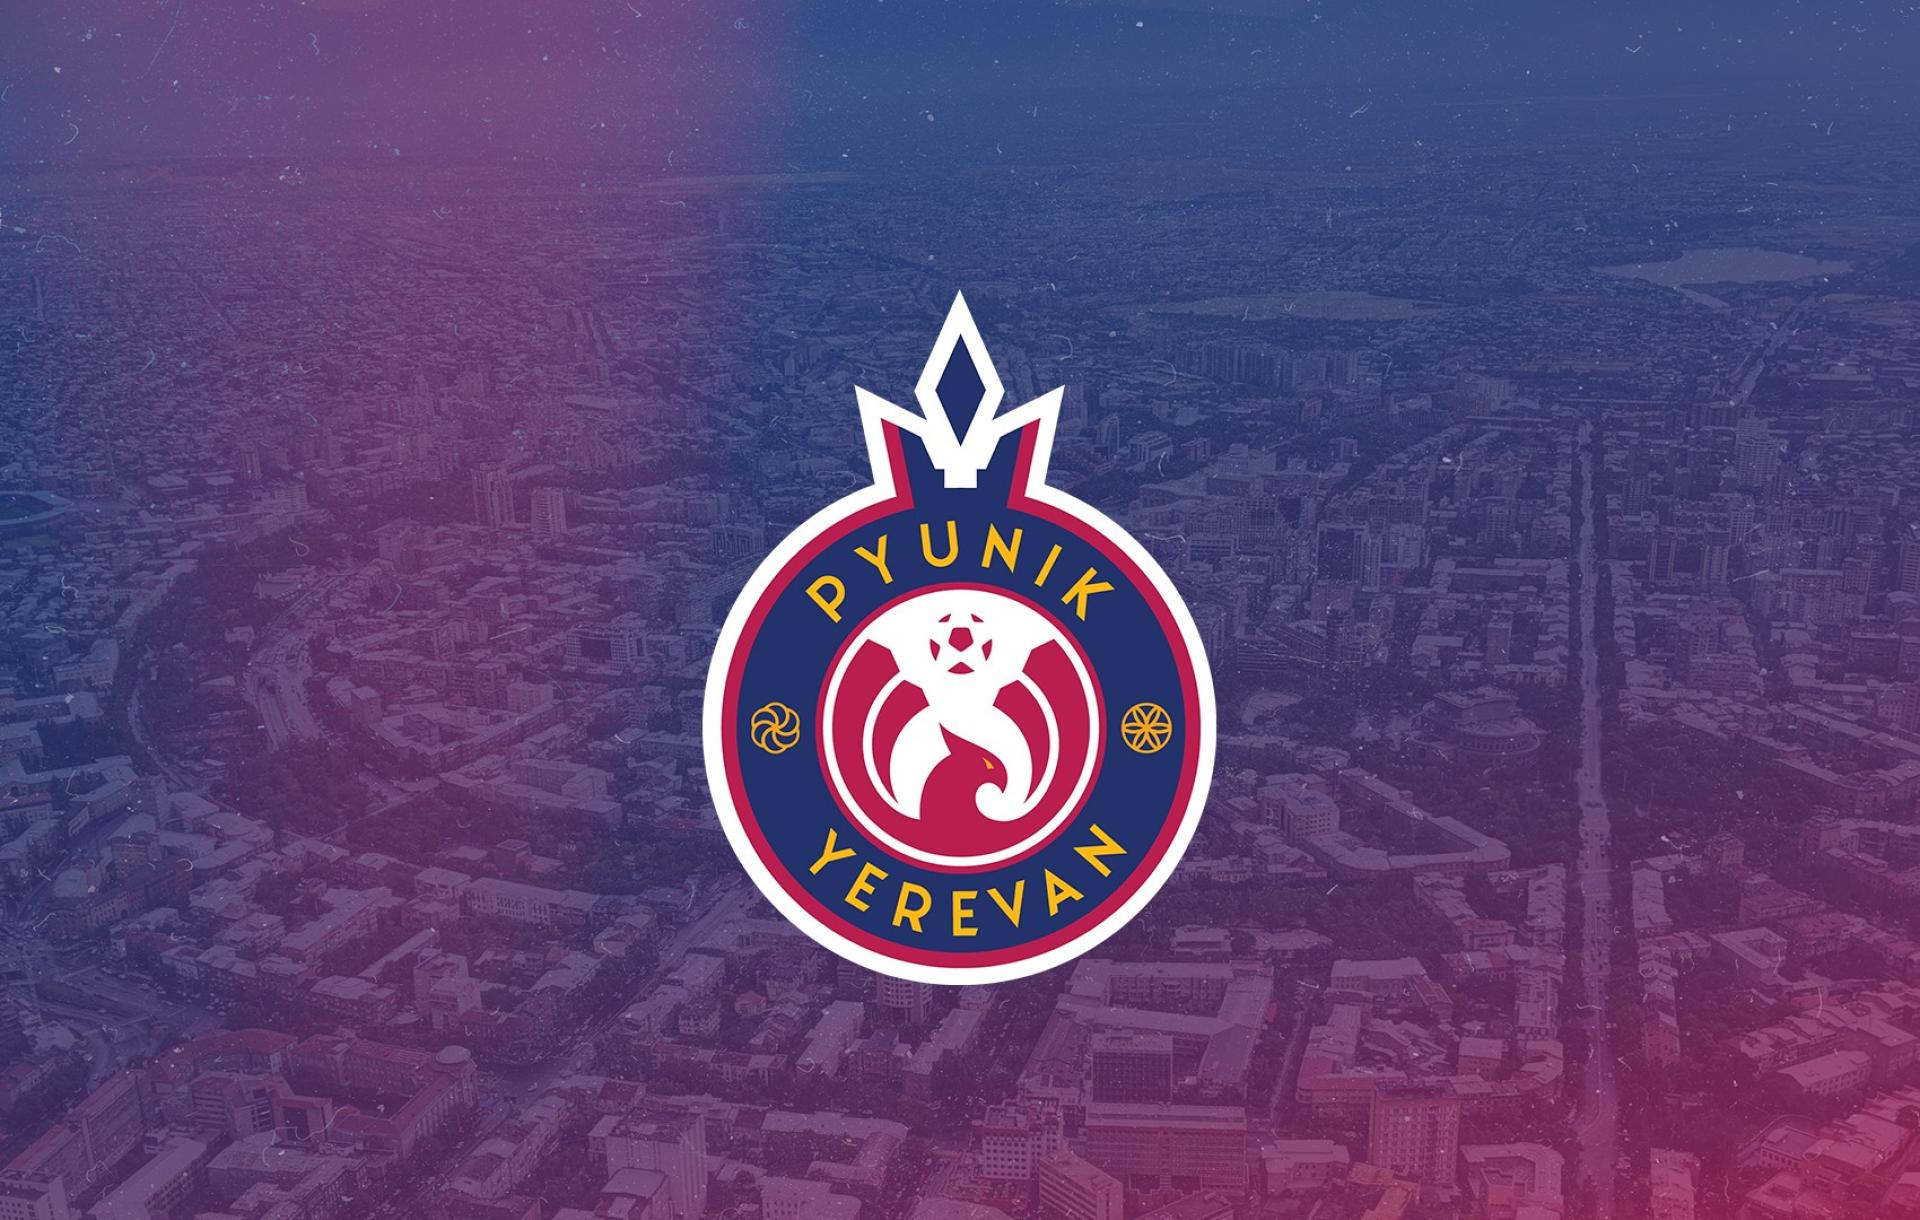 Ermenistan’ın Pyunik kulübü UEFA Konferans Ligi'nin üçüncü eleme turunda mücadelesini sürdürecek